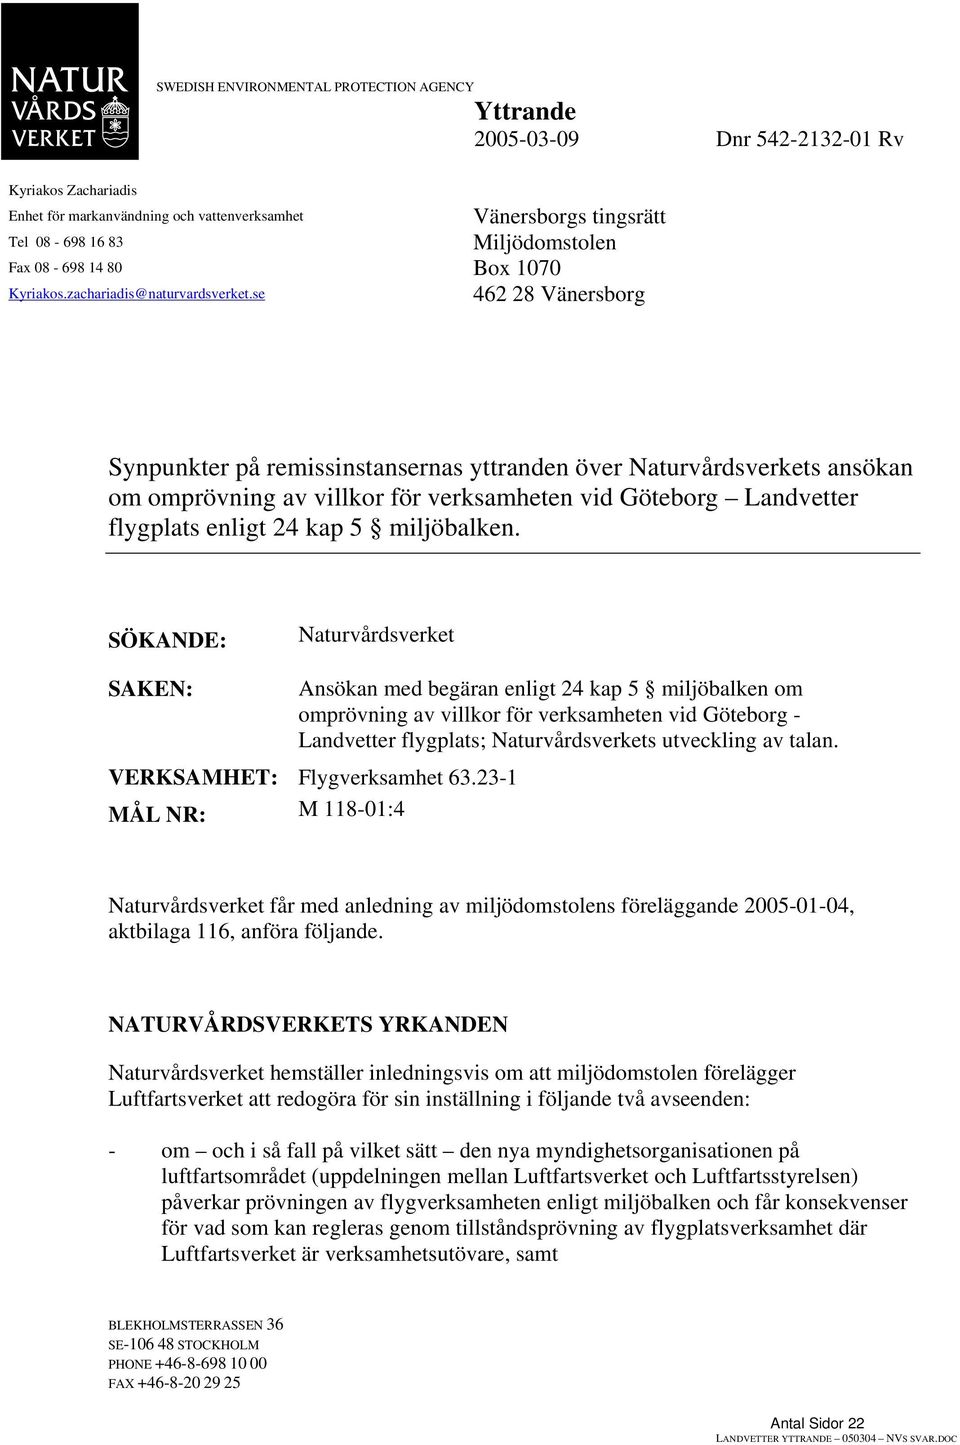 se 462 28 Vänersborg Synpunkter på remissinstansernas yttranden över Naturvårdsverkets ansökan om omprövning av villkor för verksamheten vid Göteborg Landvetter flygplats enligt 24 kap 5 miljöbalken.